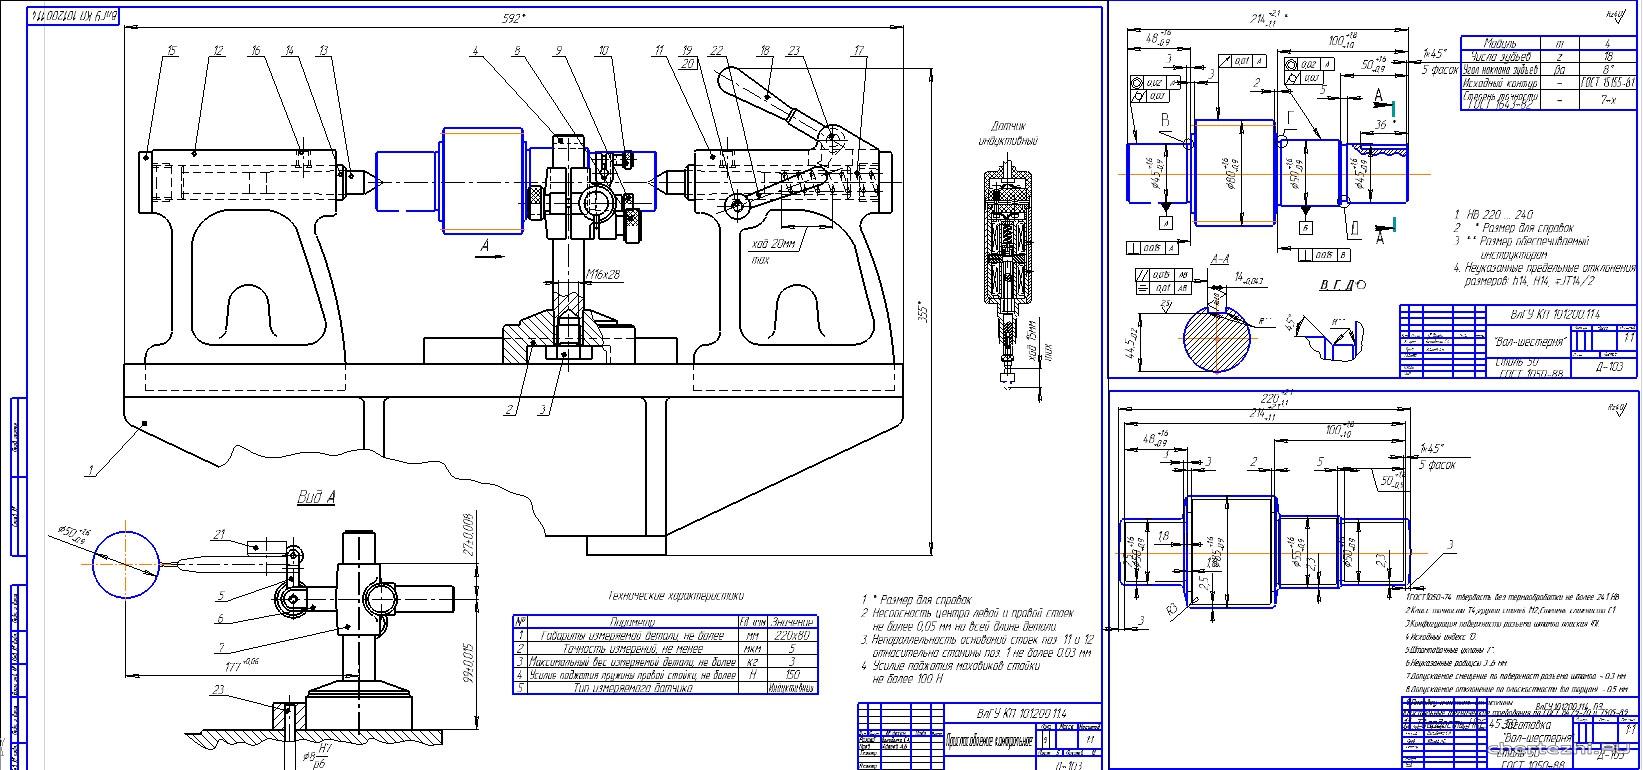 Курсовая работа по теме Удосконалення технологічного процесу ремонту комплекту агрегатів автомобіля КамАЗ-5511, річна програма 100 комплектів